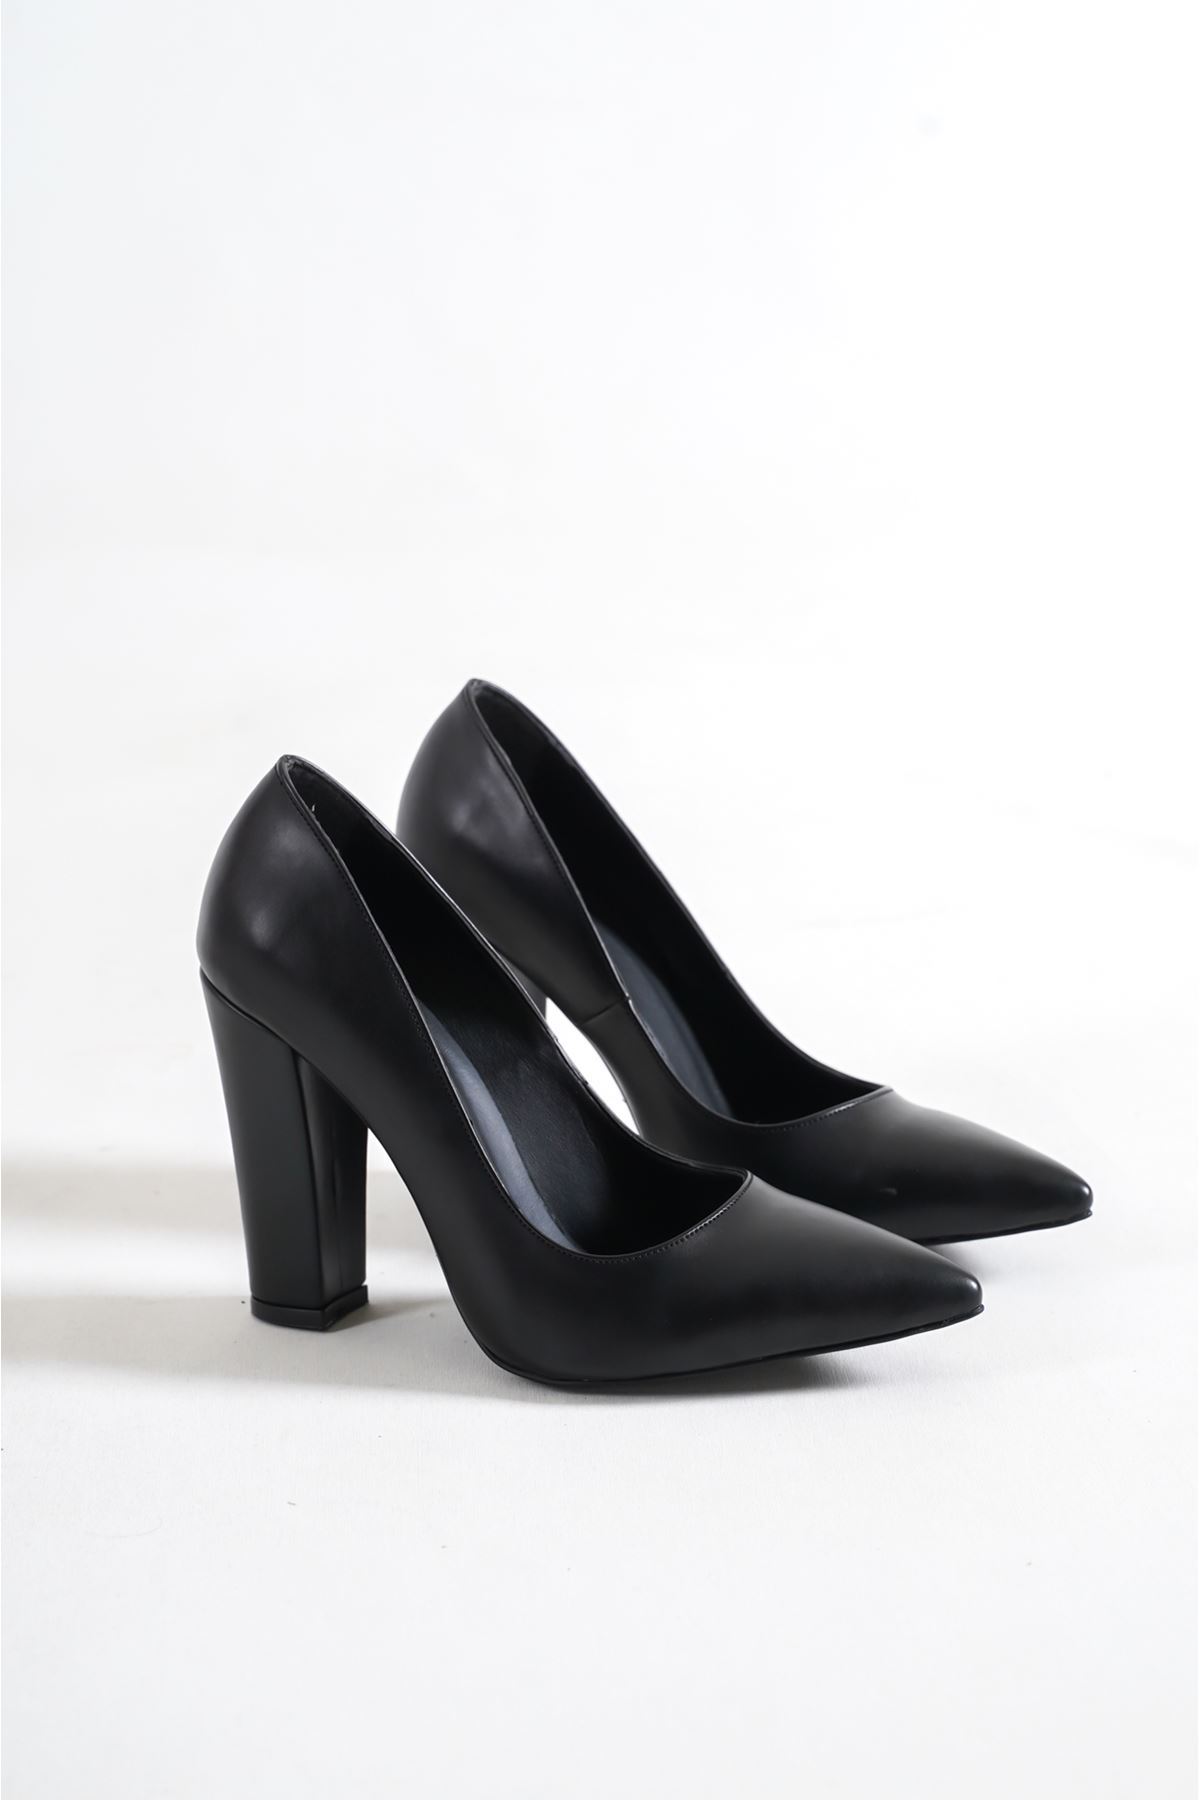 Tokyo Siyah Cilt Kadın Kalın Topuklu Ayakkabı Stiletto